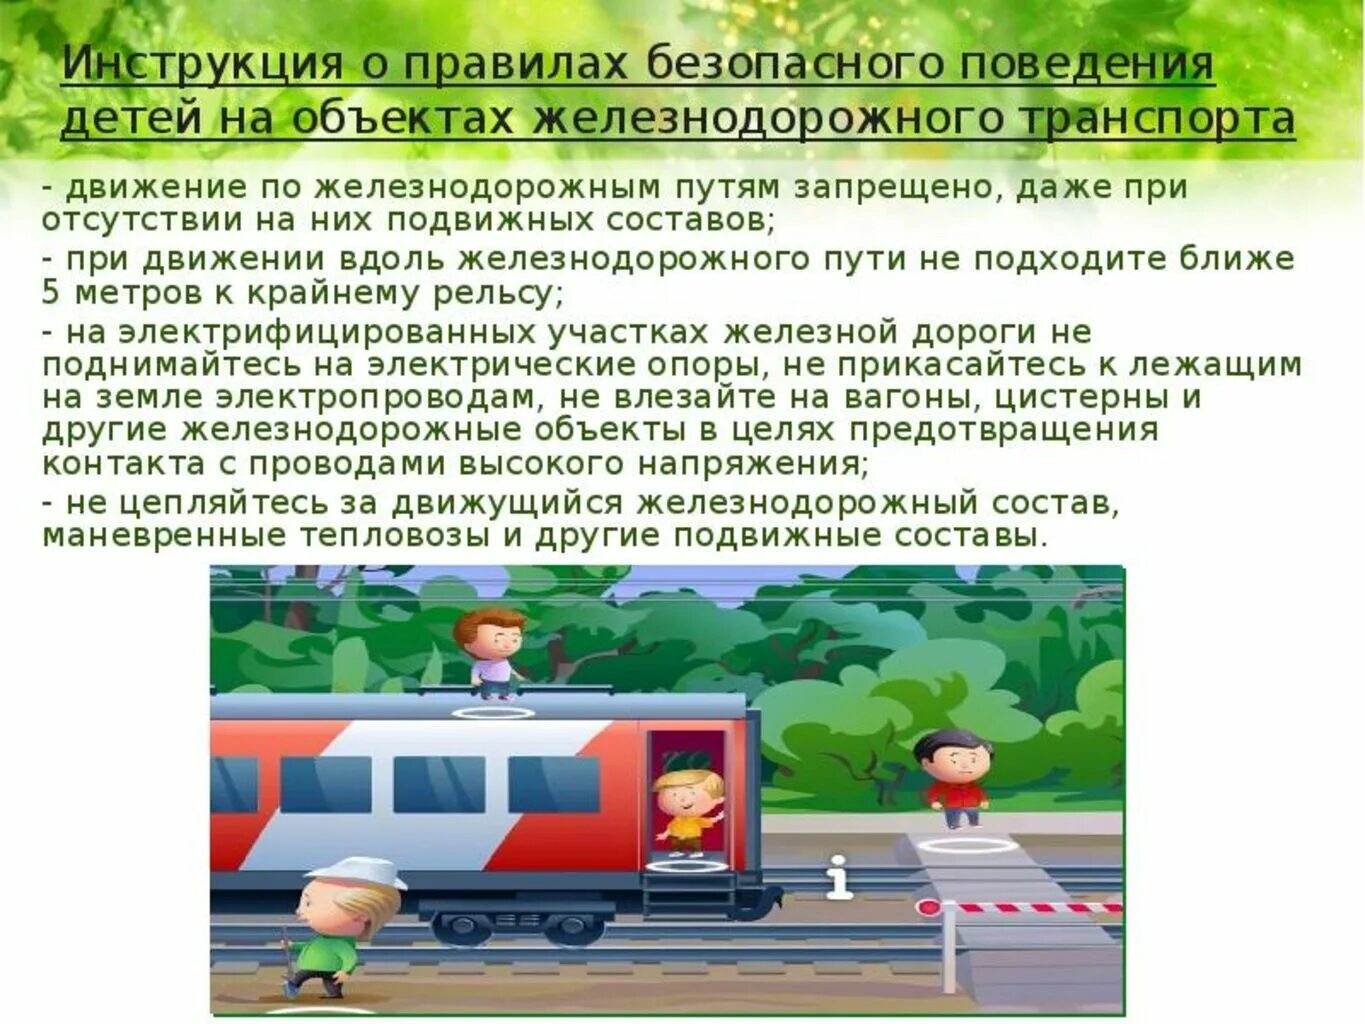 Безопасность на Железнодорожном транспорте ОБЖ. Безопасность на Железнодорожном транспорте для детей. Безопасность на объектах железнодорожного транспорта детям. Безопасность на ж/д транспорте памятка.